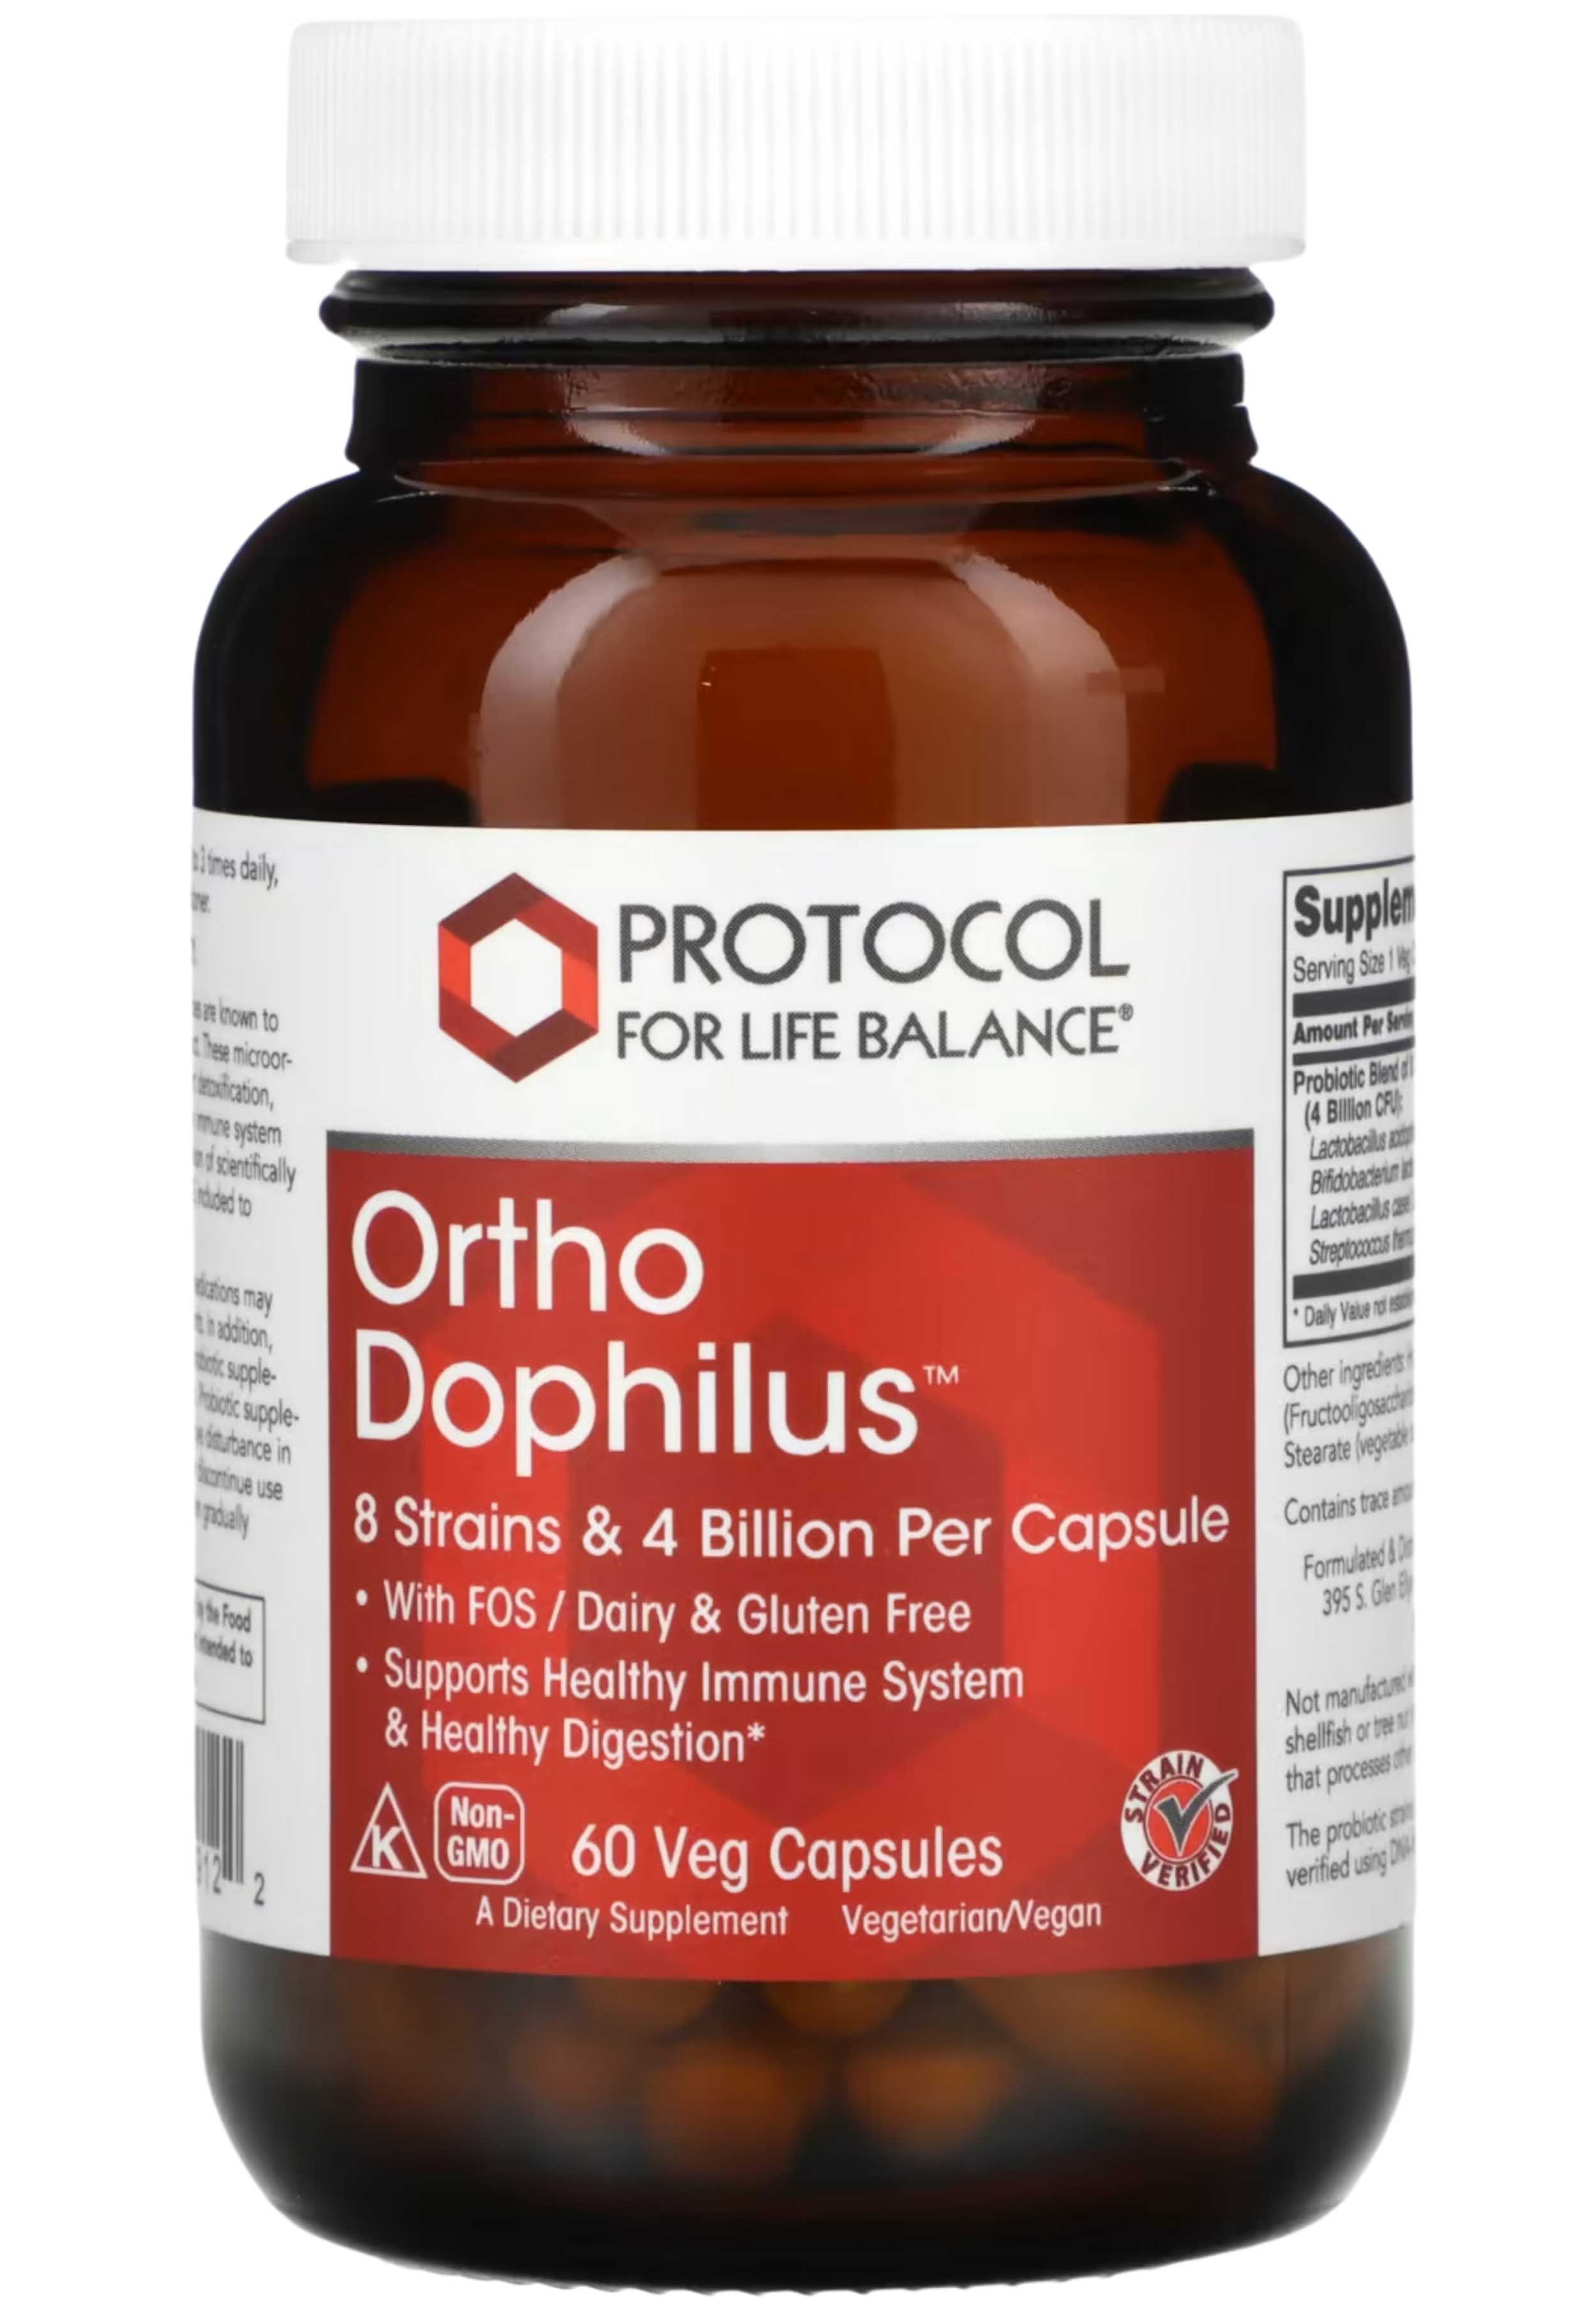 Protocol for Life Balance Ortho Dophilus